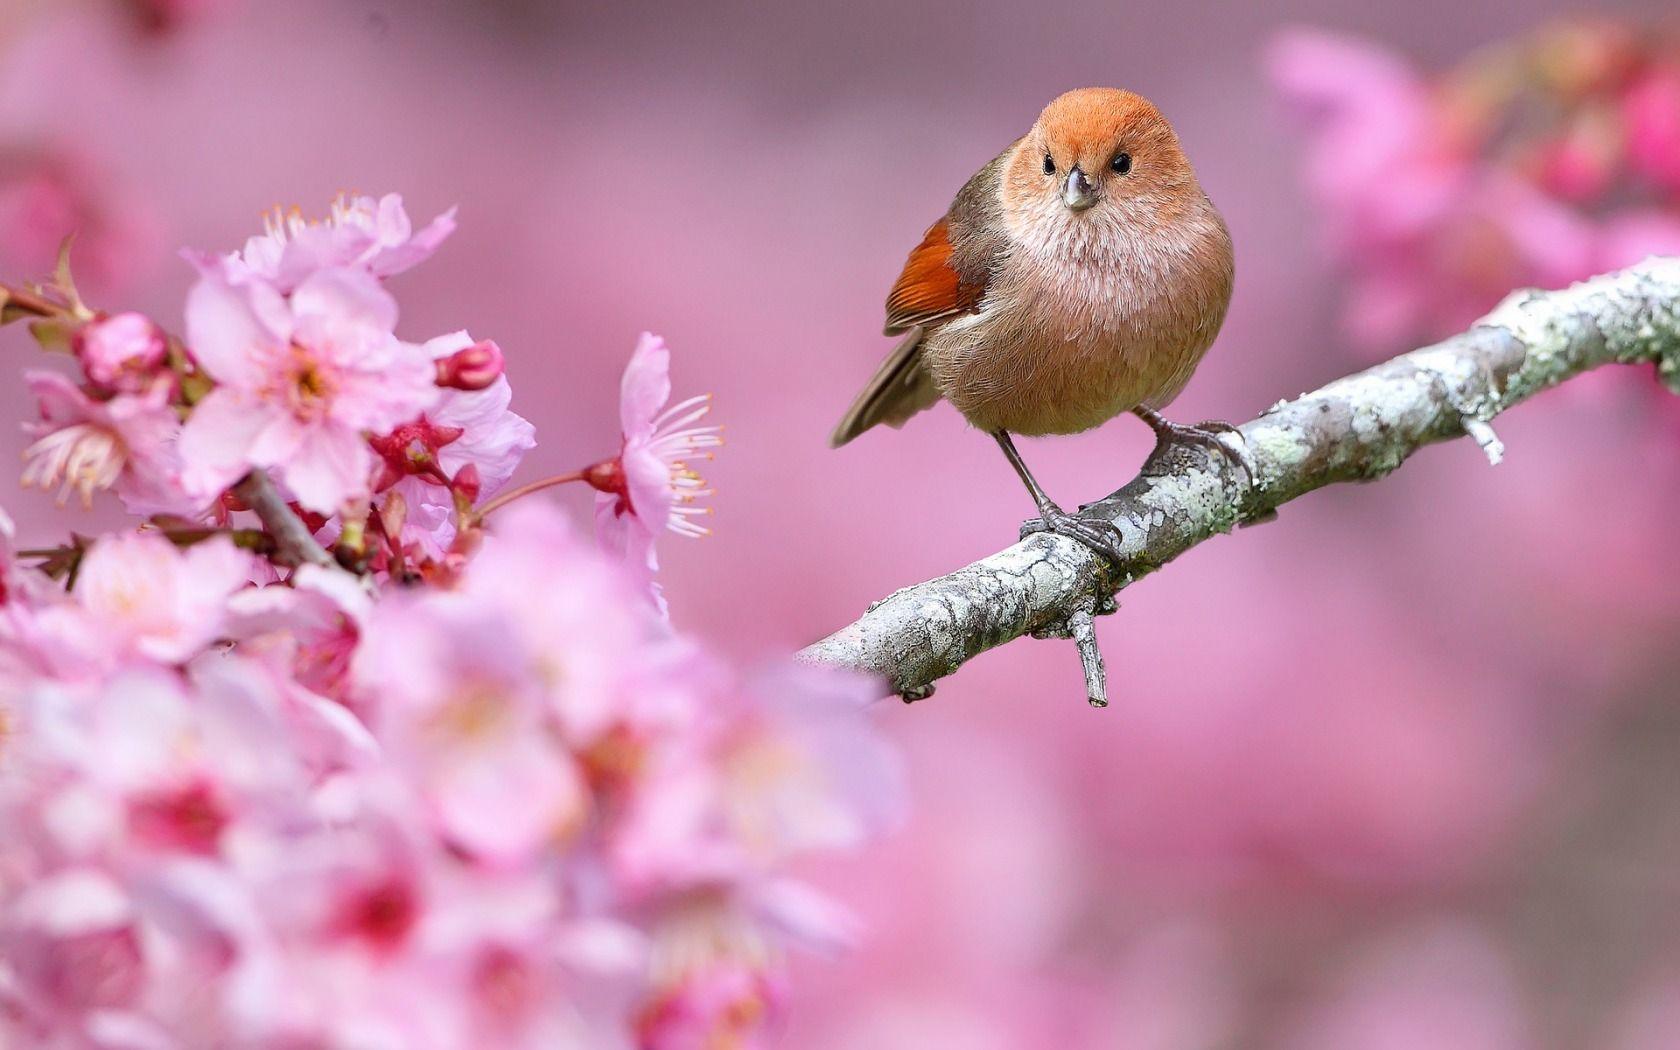 Hình nền chim và hoa mùa xuân 1680x1050 của Ladygaga Revelwallpapernet - Hình nền đẹp Những chú chim dễ thương - 1680x1050 - Tải xuống Hình nền HD